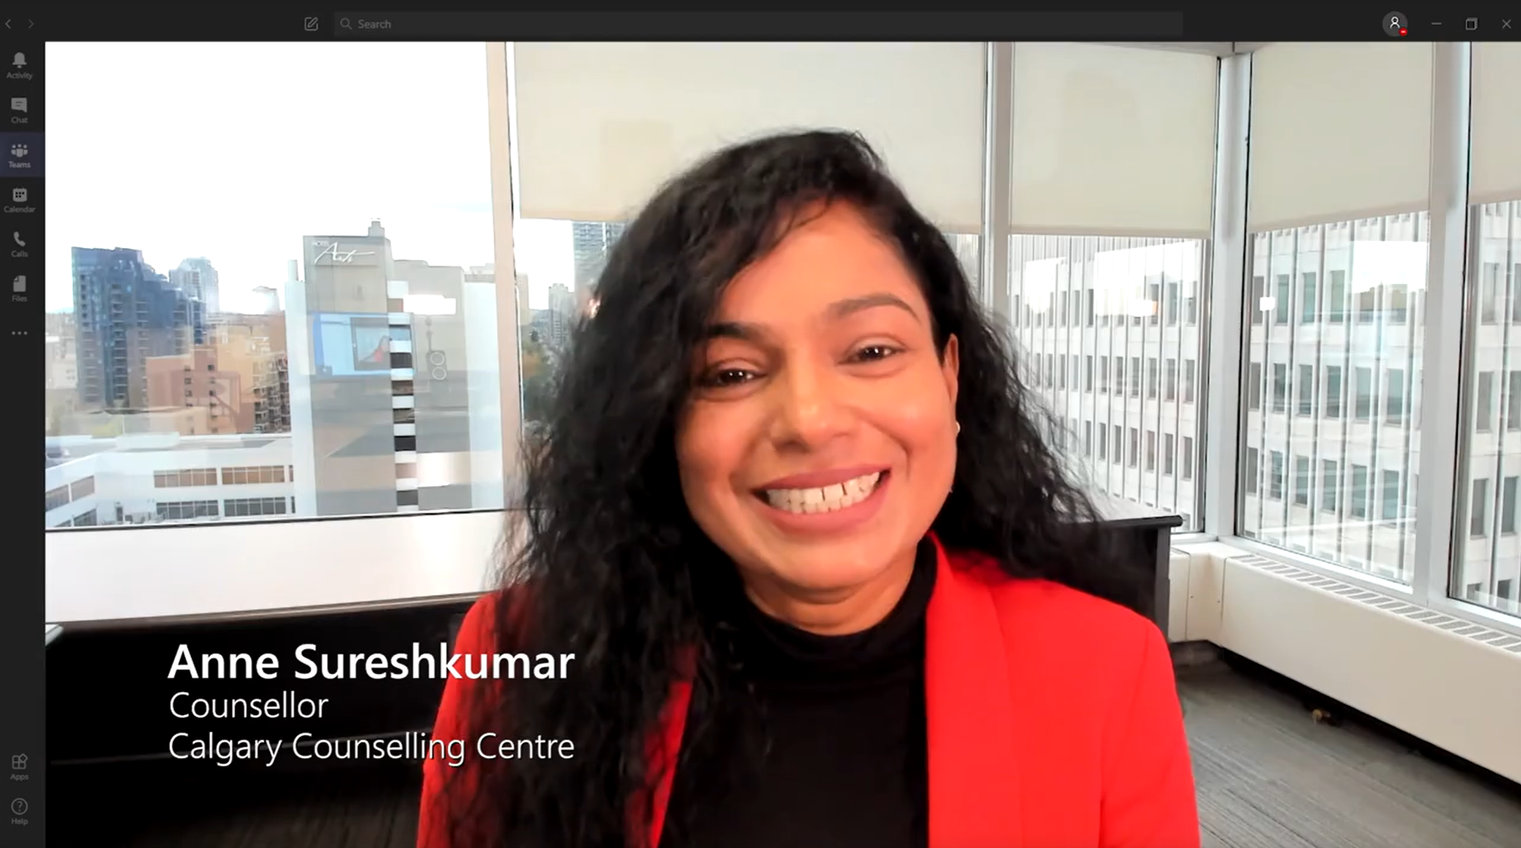  Anne Sureshkumar participe à un appel vidéo des équipes